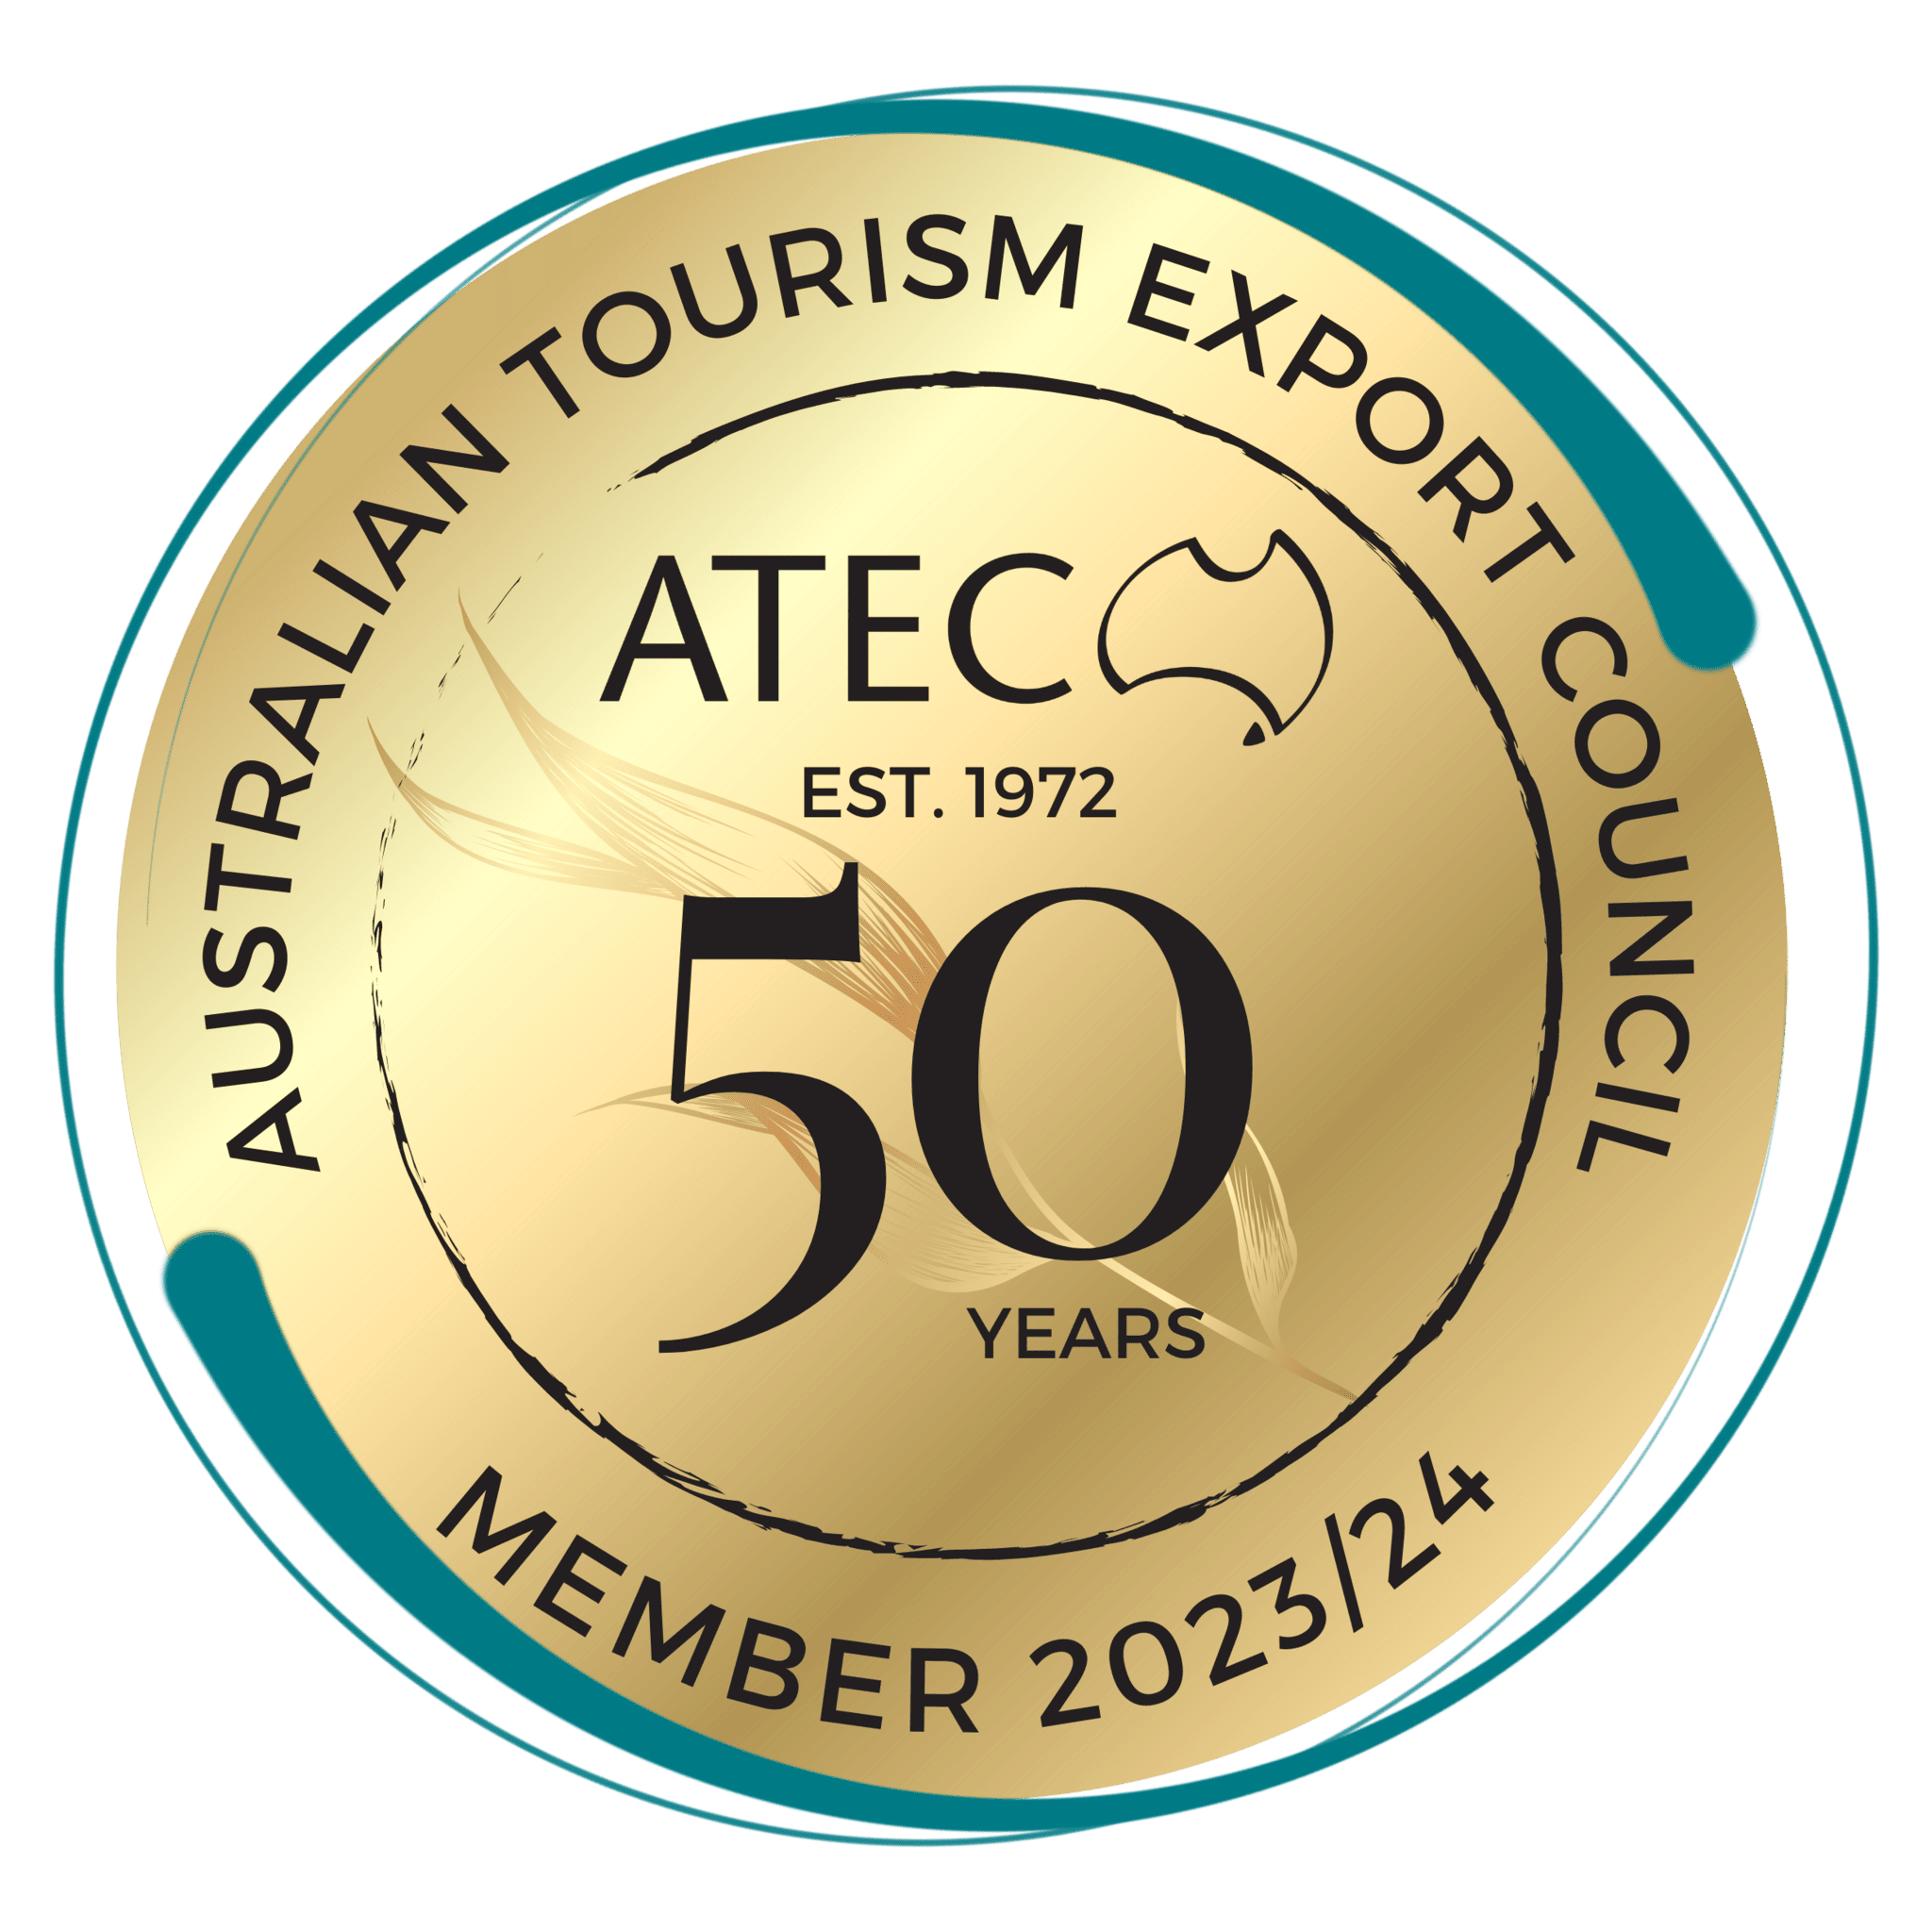 Tour de Vines is a member of the Australian Tourism Export Council